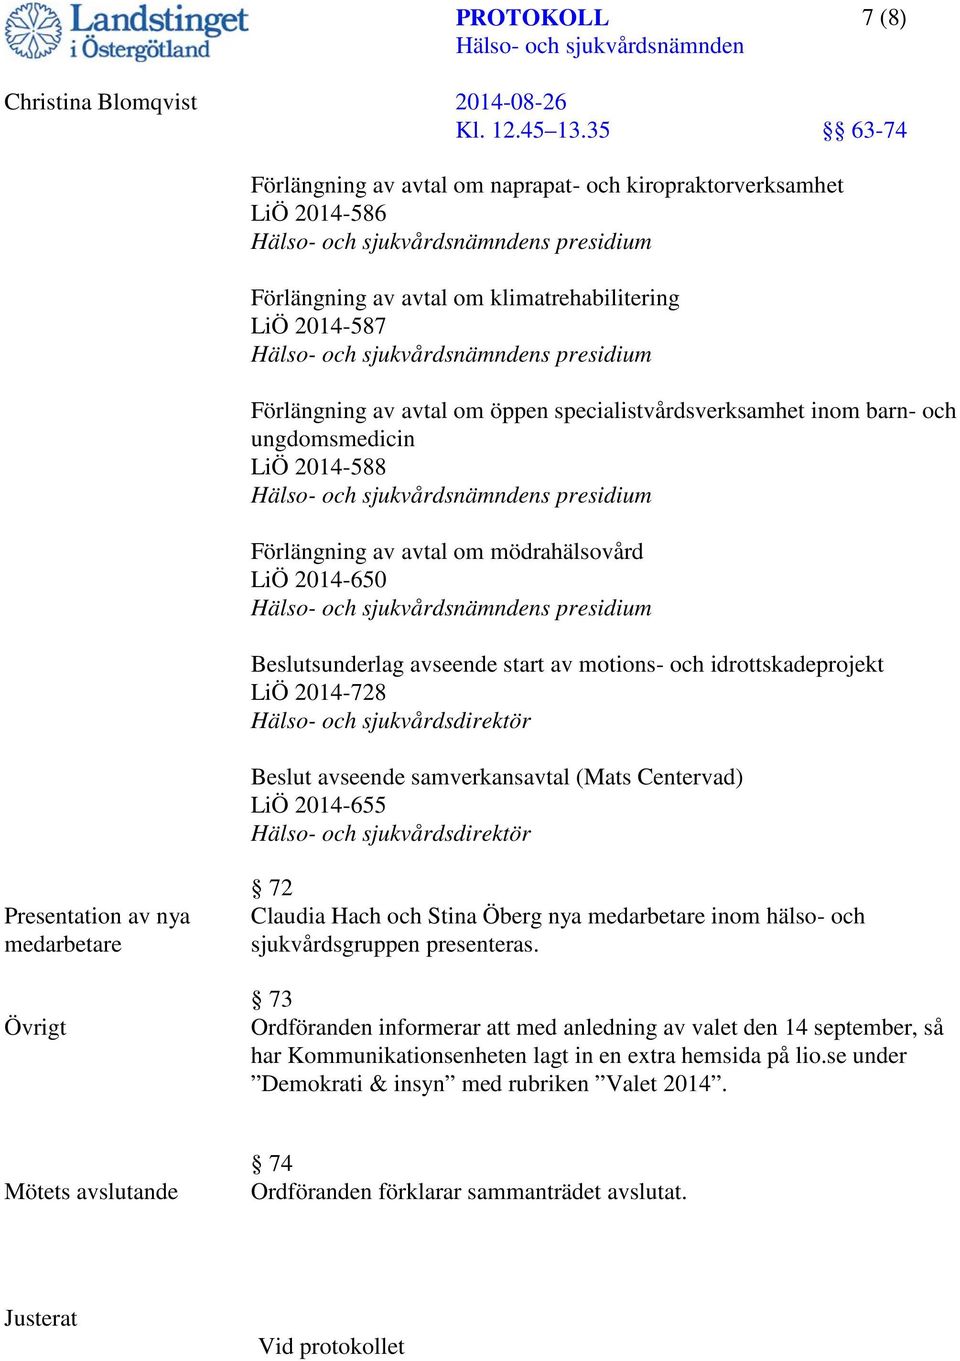 idrottskadeprojekt LiÖ 2014-728 Hälso- och sjukvårdsdirektör Beslut avseende samverkansavtal (Mats Centervad) LiÖ 2014-655 Hälso- och sjukvårdsdirektör Presentation av nya medarbetare Övrigt 72